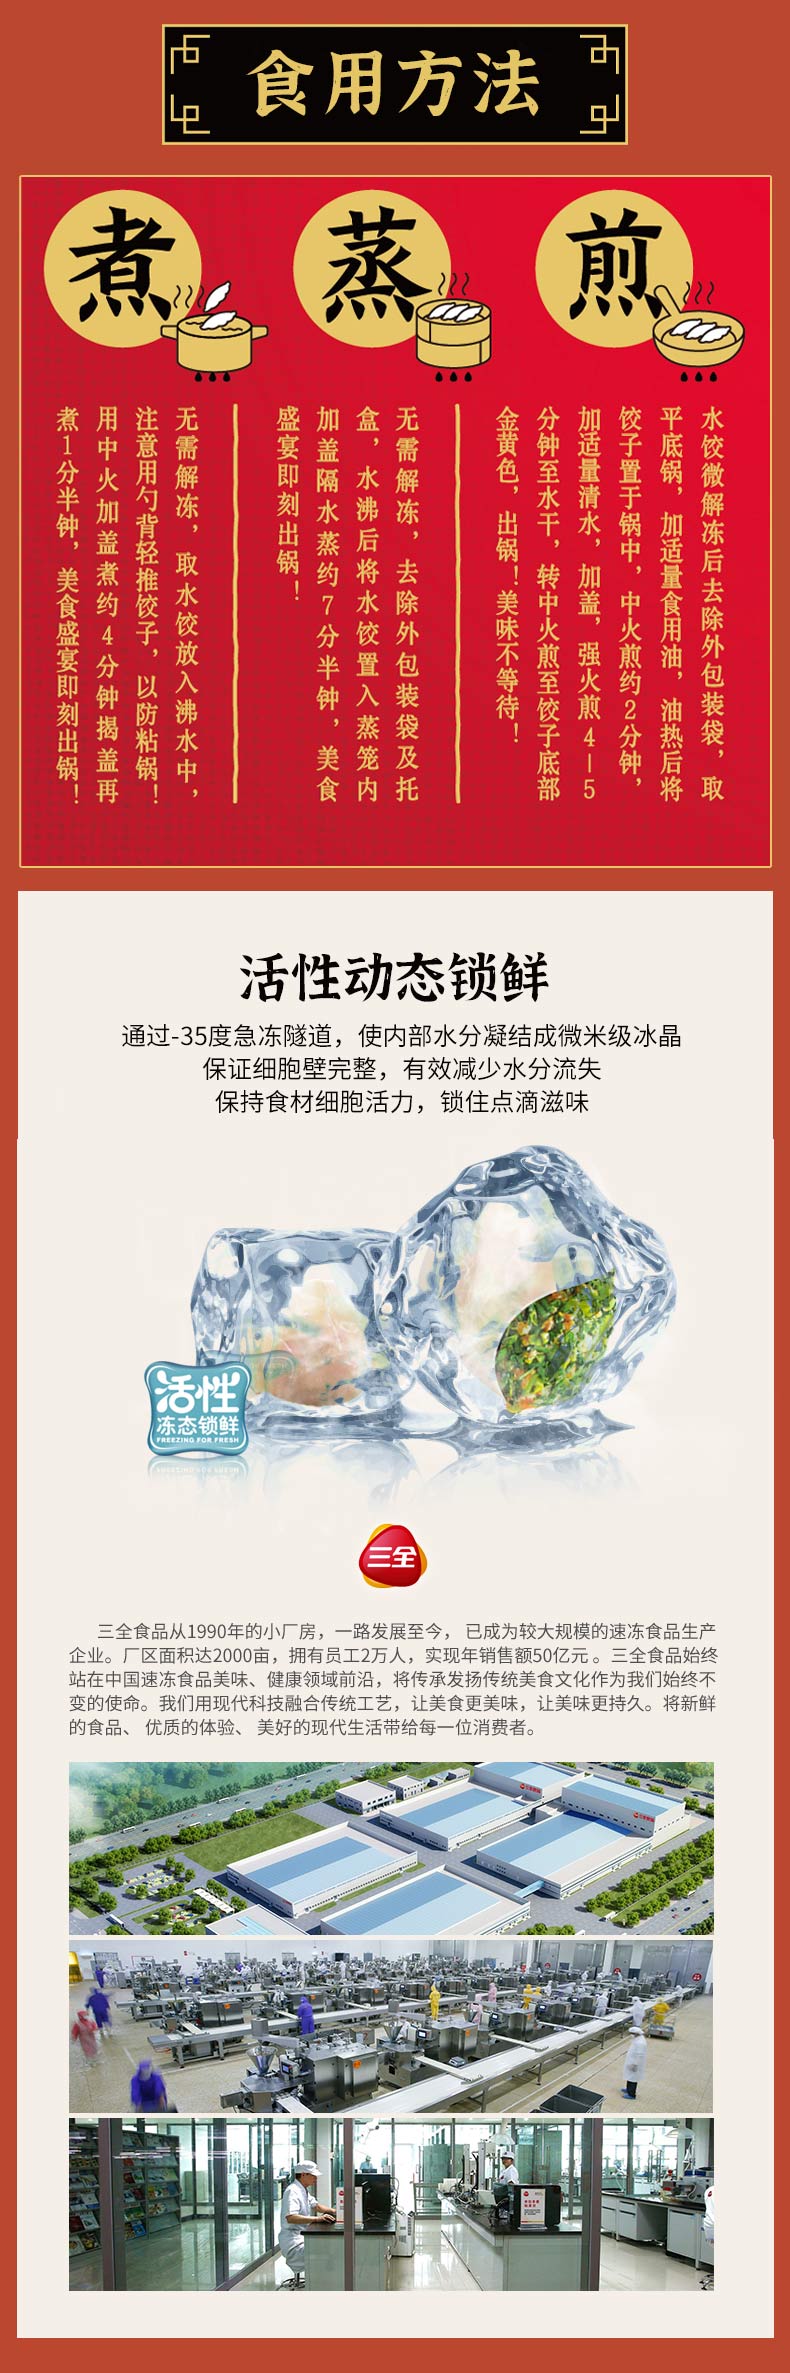 三全 状元水饺 荠菜猪肉口味 1.02kg 60只早餐 速冻饺子水饺猪肉生鲜